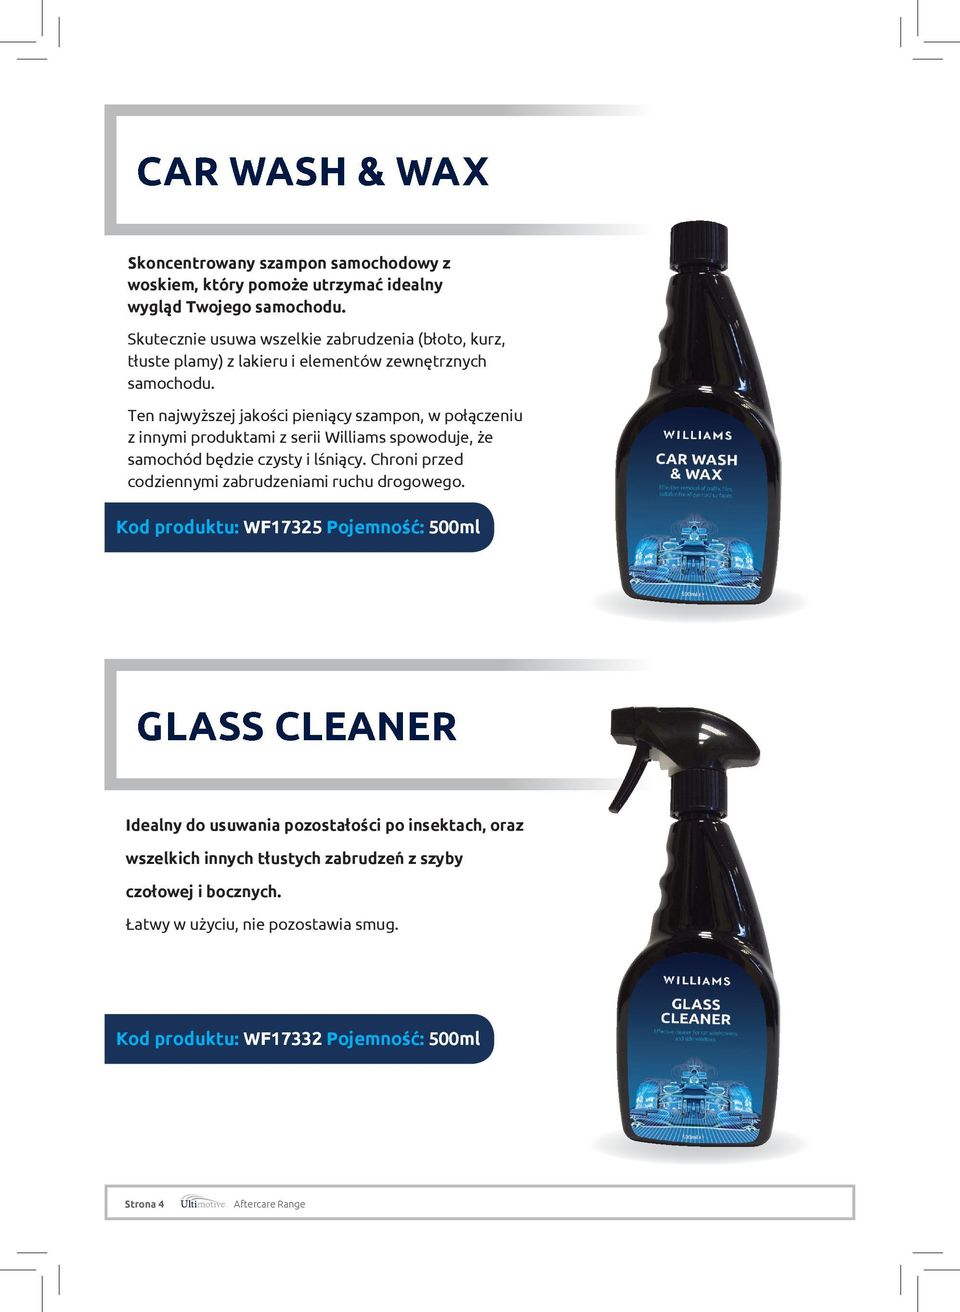 Ten najwyższej jakości pieniący szampon, w połączeniu z innymi produktami z serii Williams spowoduje, że samochód będzie czysty i lśniący.